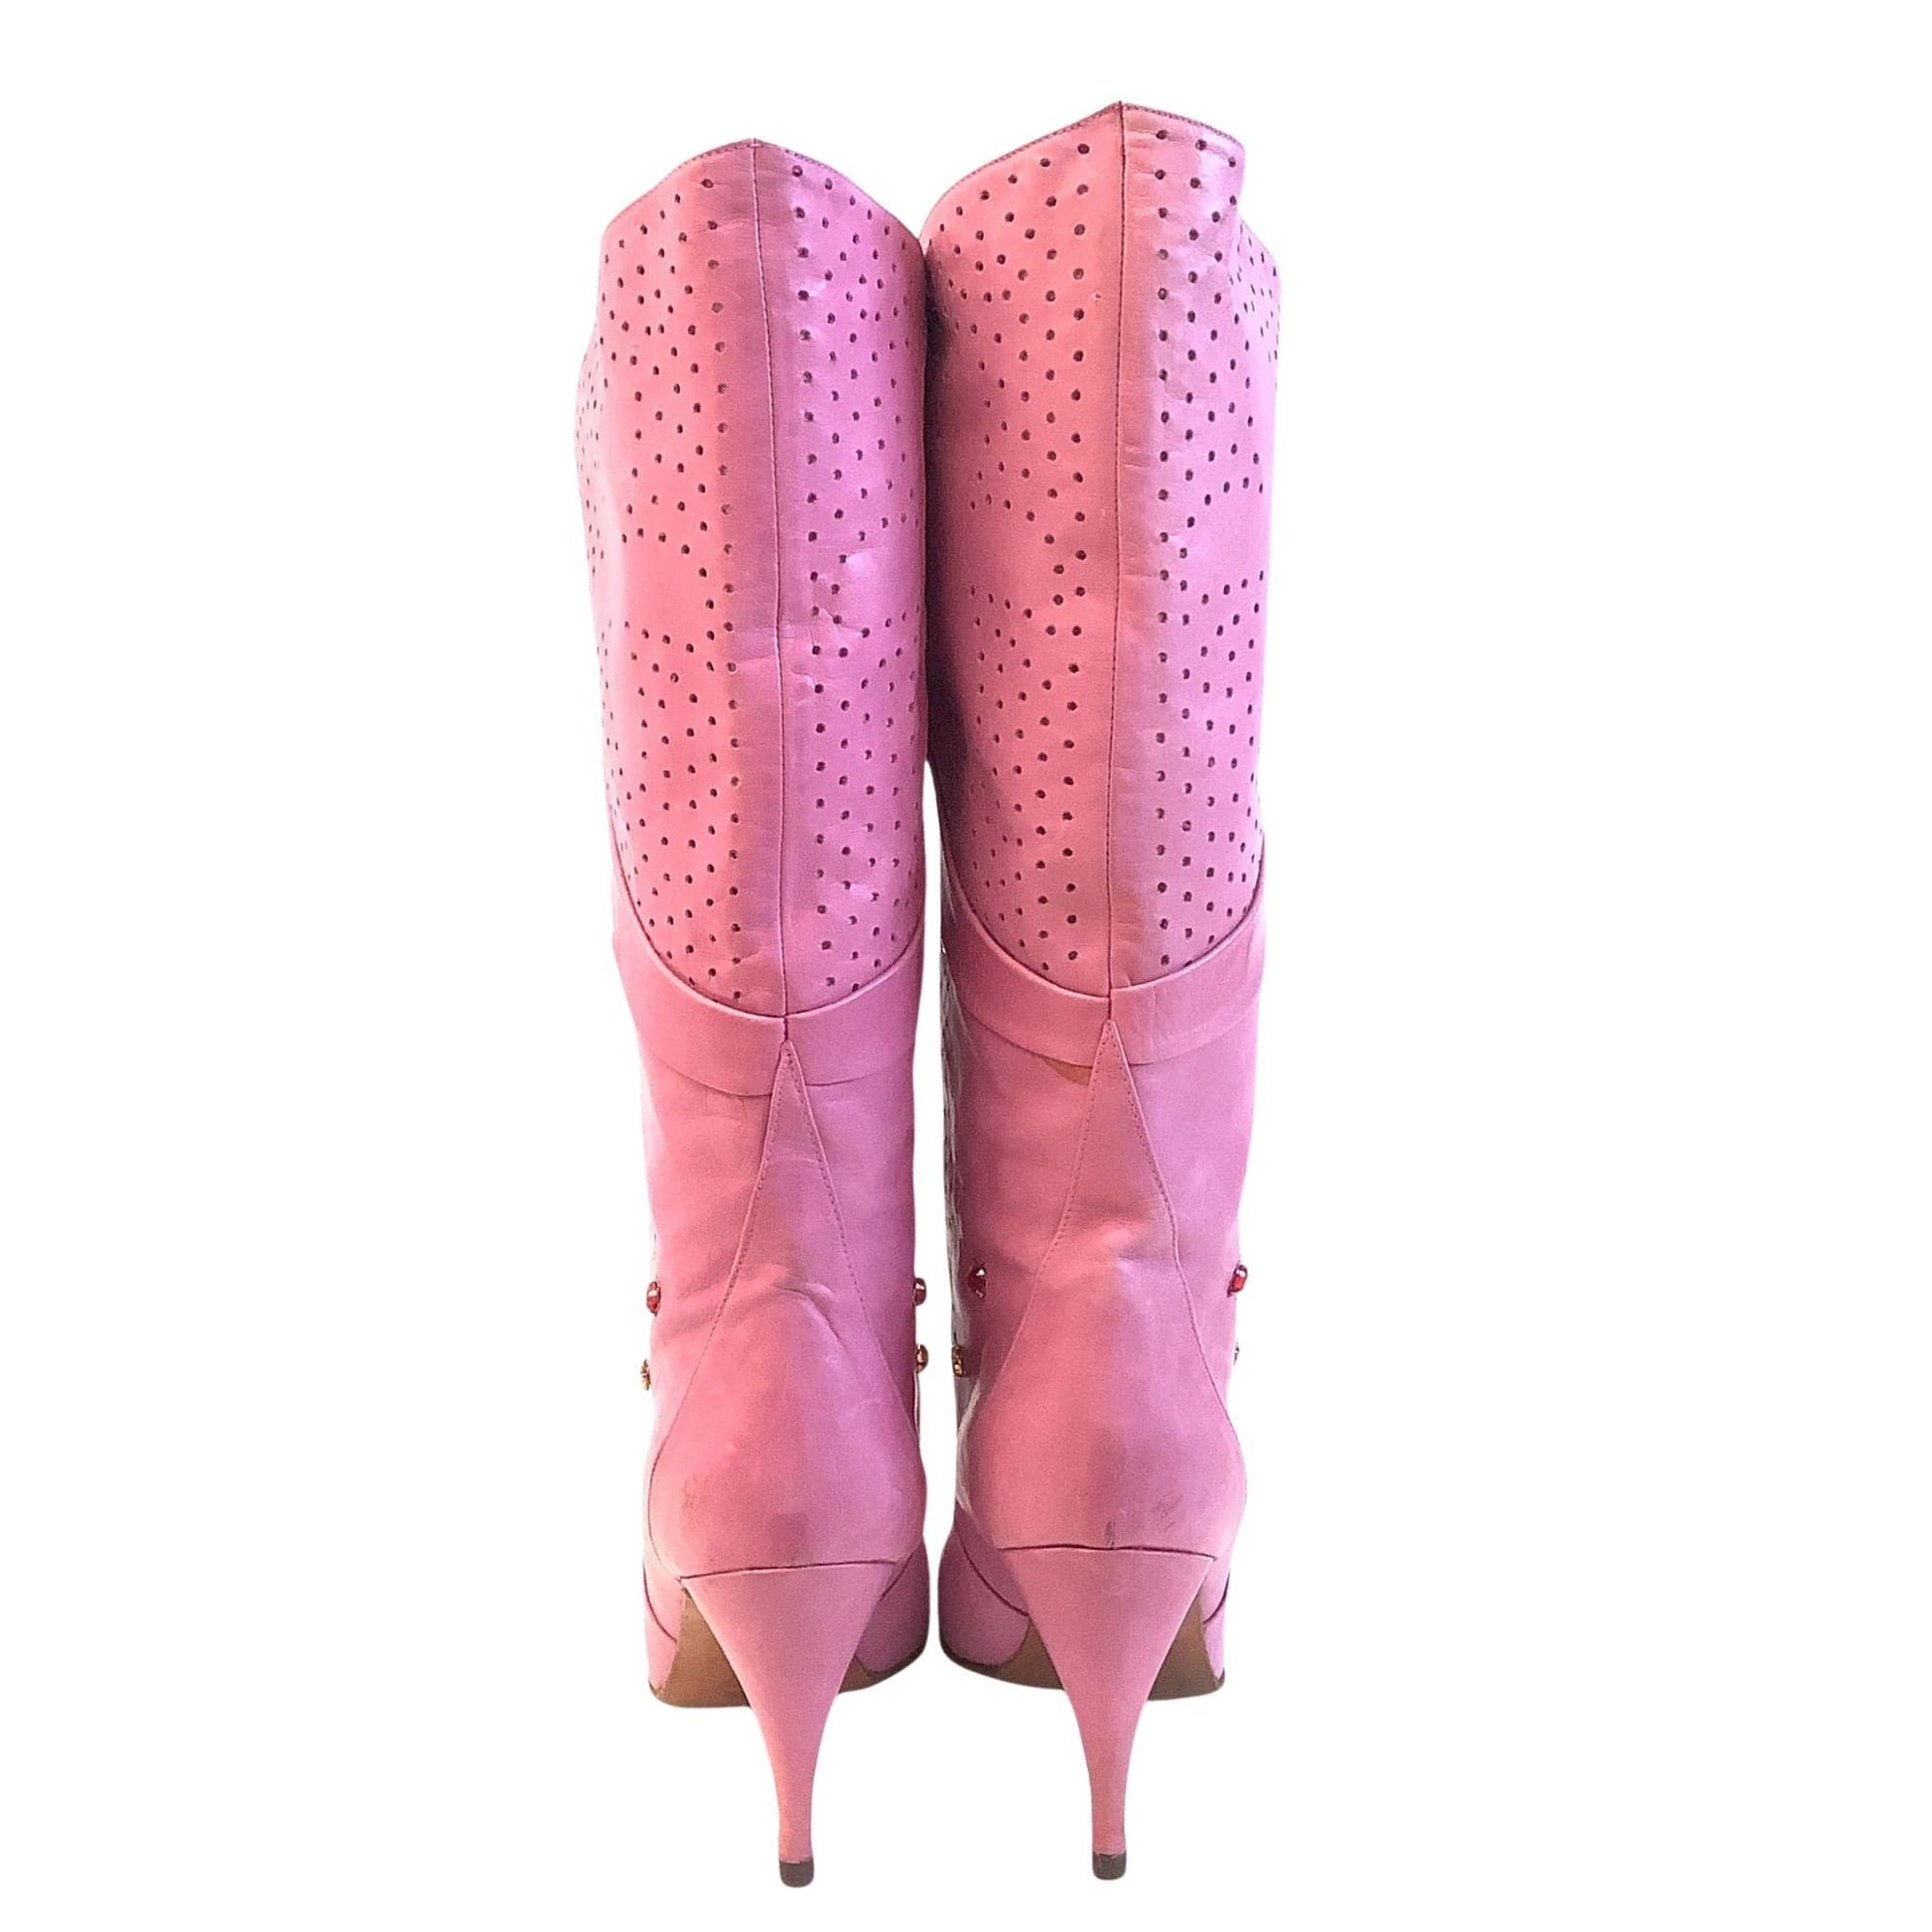 Vintage Pink Heeled Boots 7.5 / Pink / Vintage 1980s